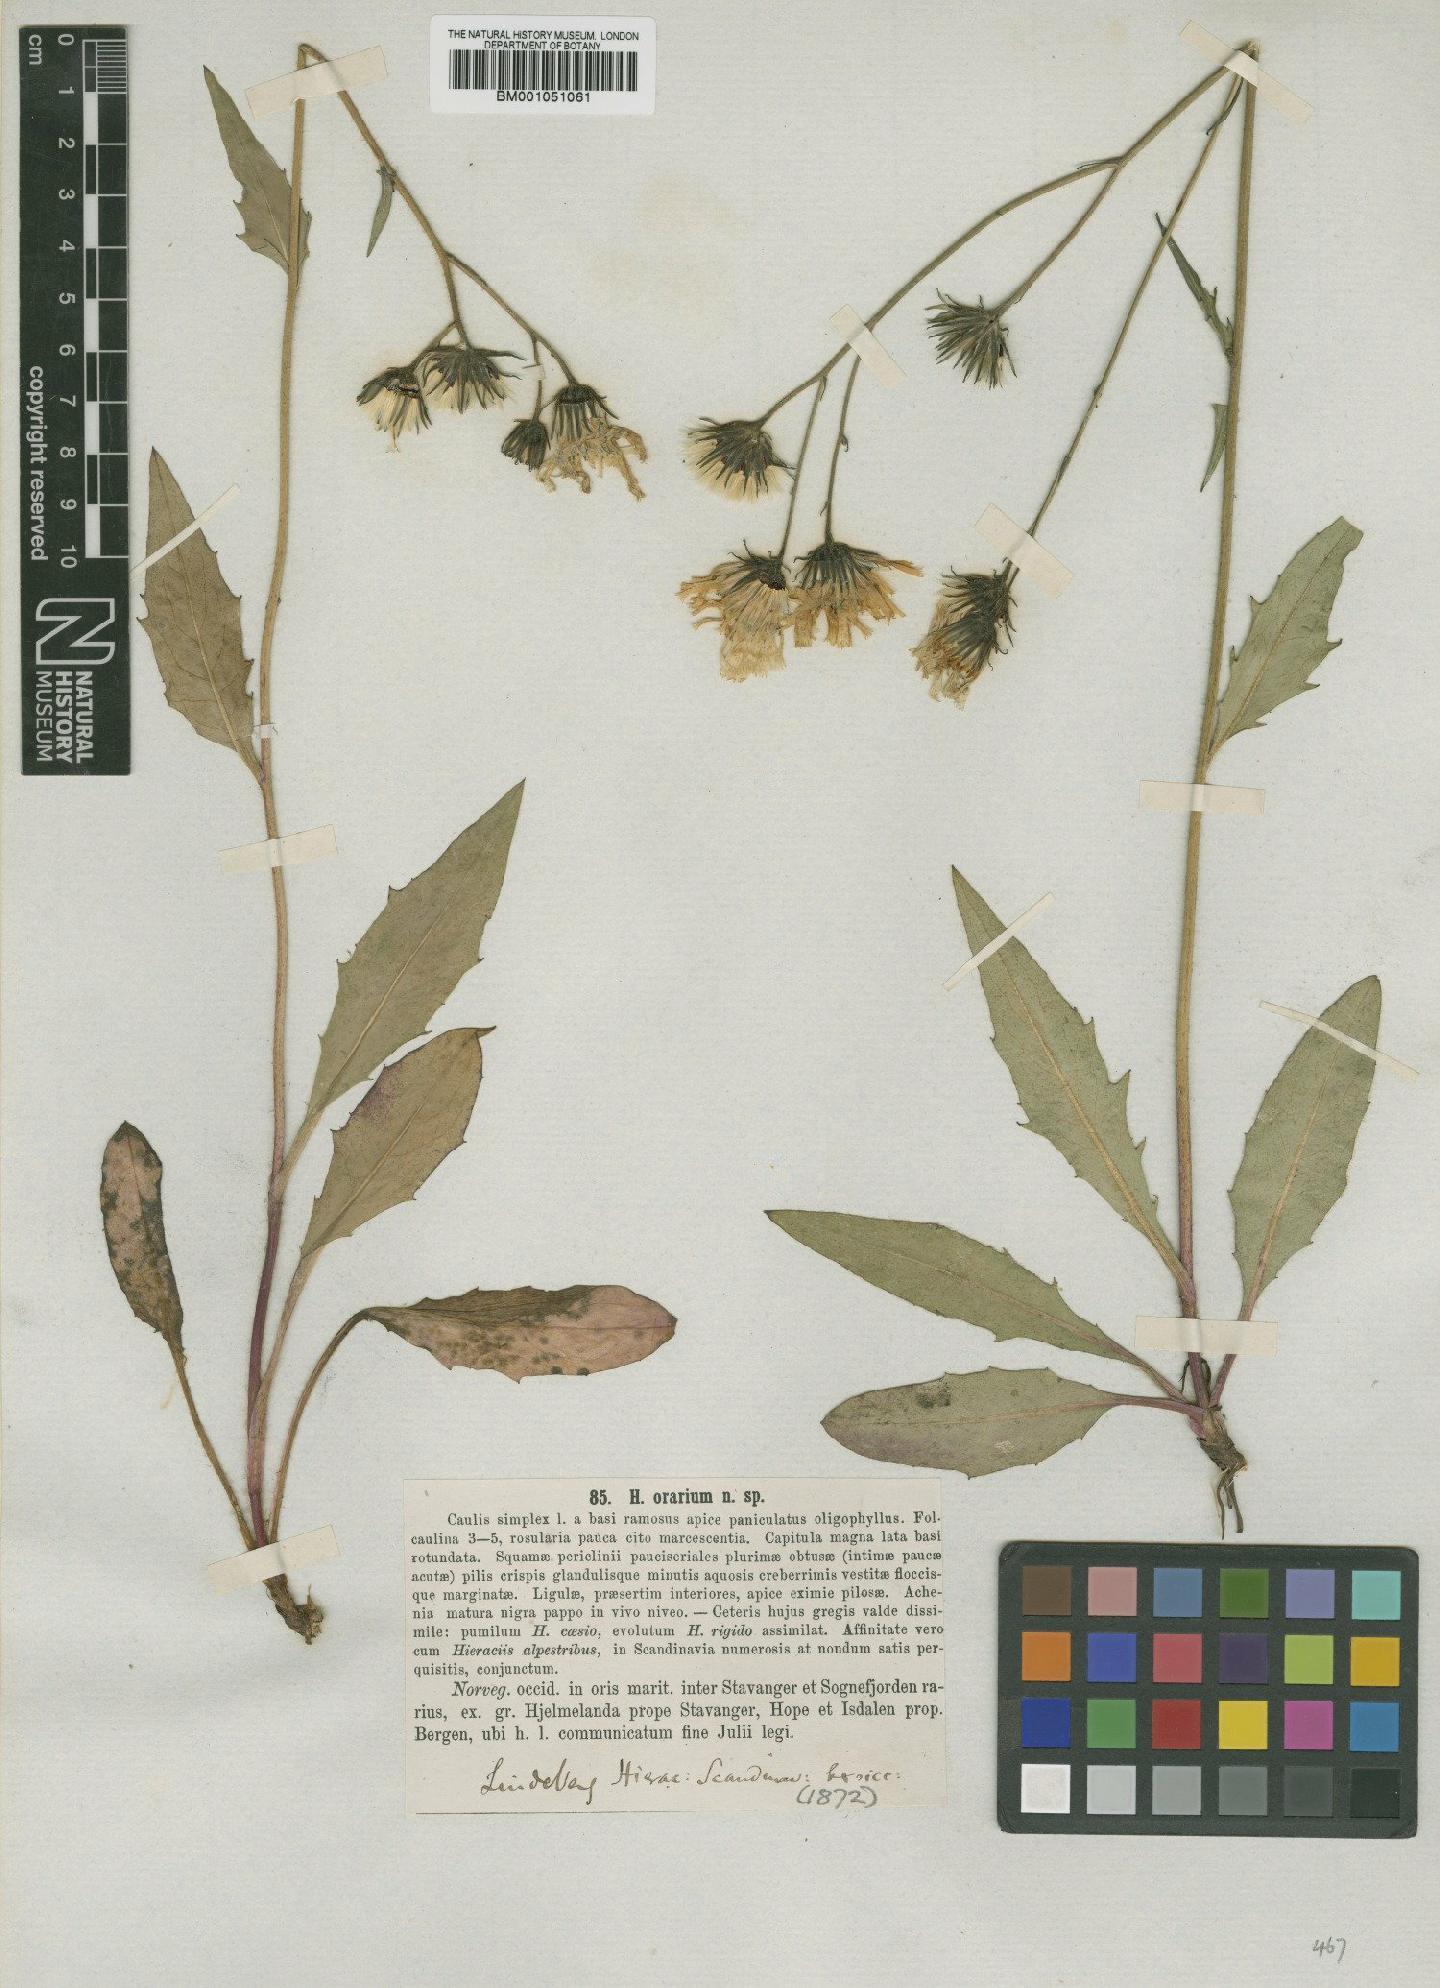 To NHMUK collection (Hieracium subramosum subsp. orarium (Lindeb.) Zahn; TYPE; NHMUK:ecatalogue:2420967)